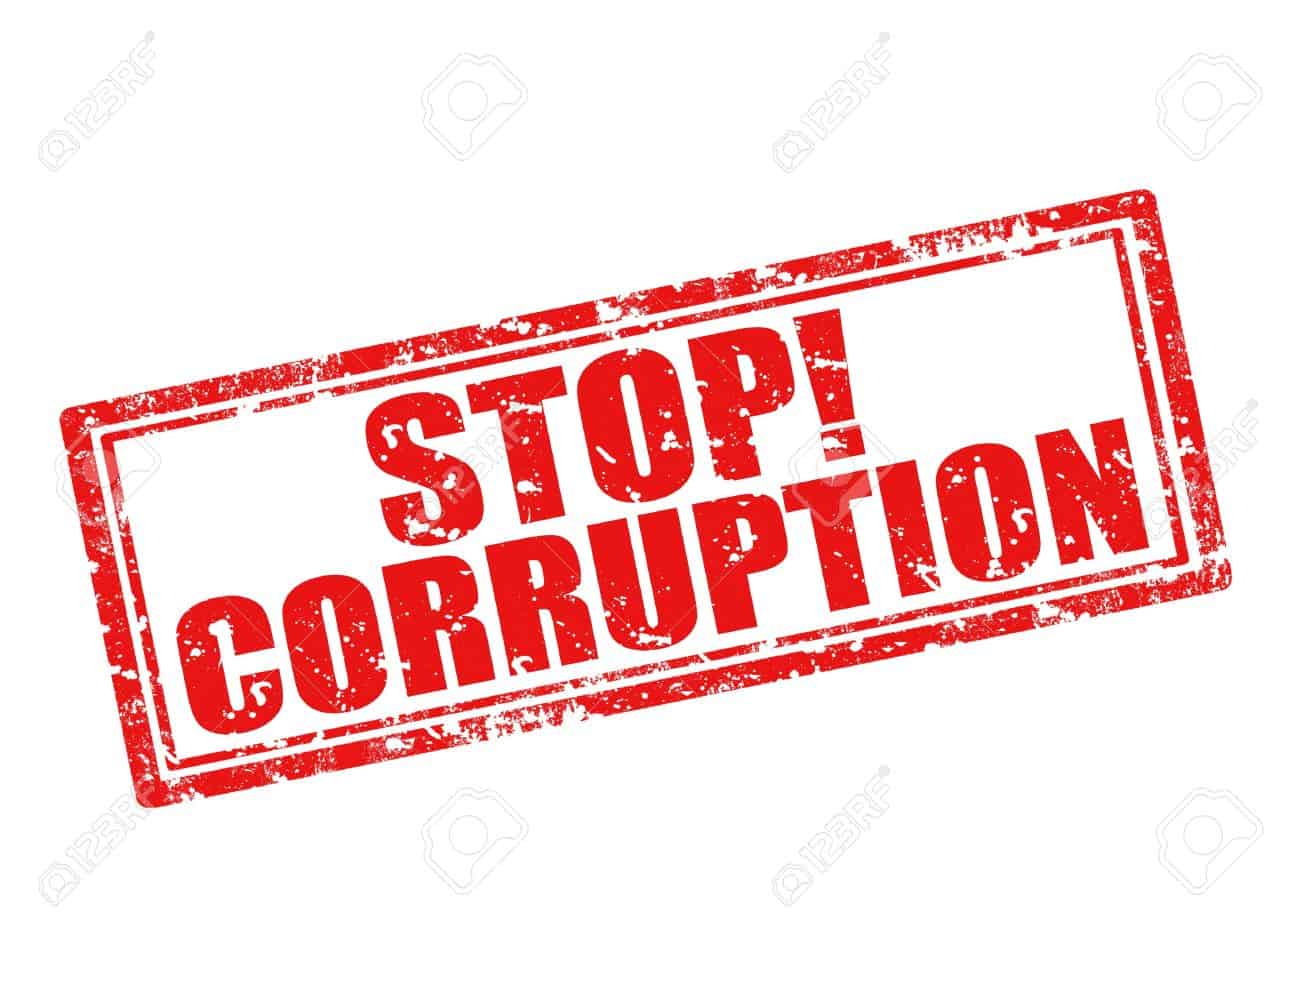 Zimbabwe joins world celebrate International Anti-Corruption Day